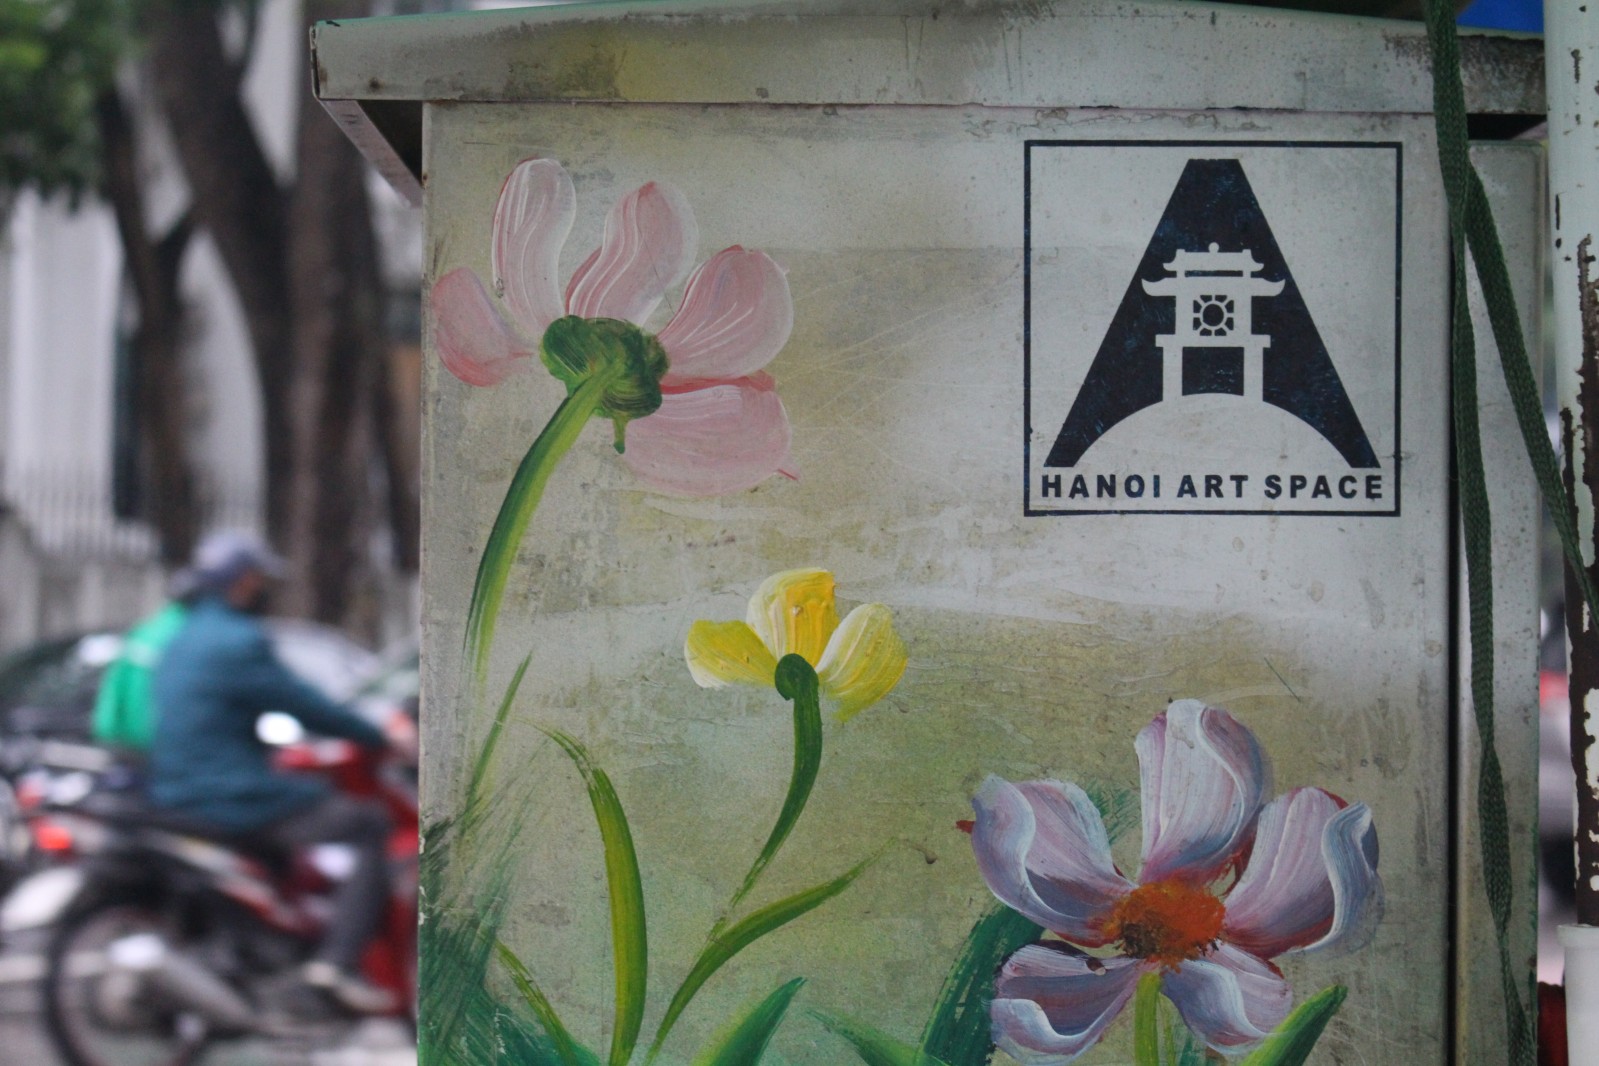 Với mục đích làm sạch các bốt điện, kêu gọi ý thức người dân, mong muốn mọi người không dán quảng cáo lên những bốt điện CLB Hanoi Art Space đã tình nguyện tham gia vẽ, mang đến bộ mặt hợp với mỹ quan đô thị hơn cho các bốt điện